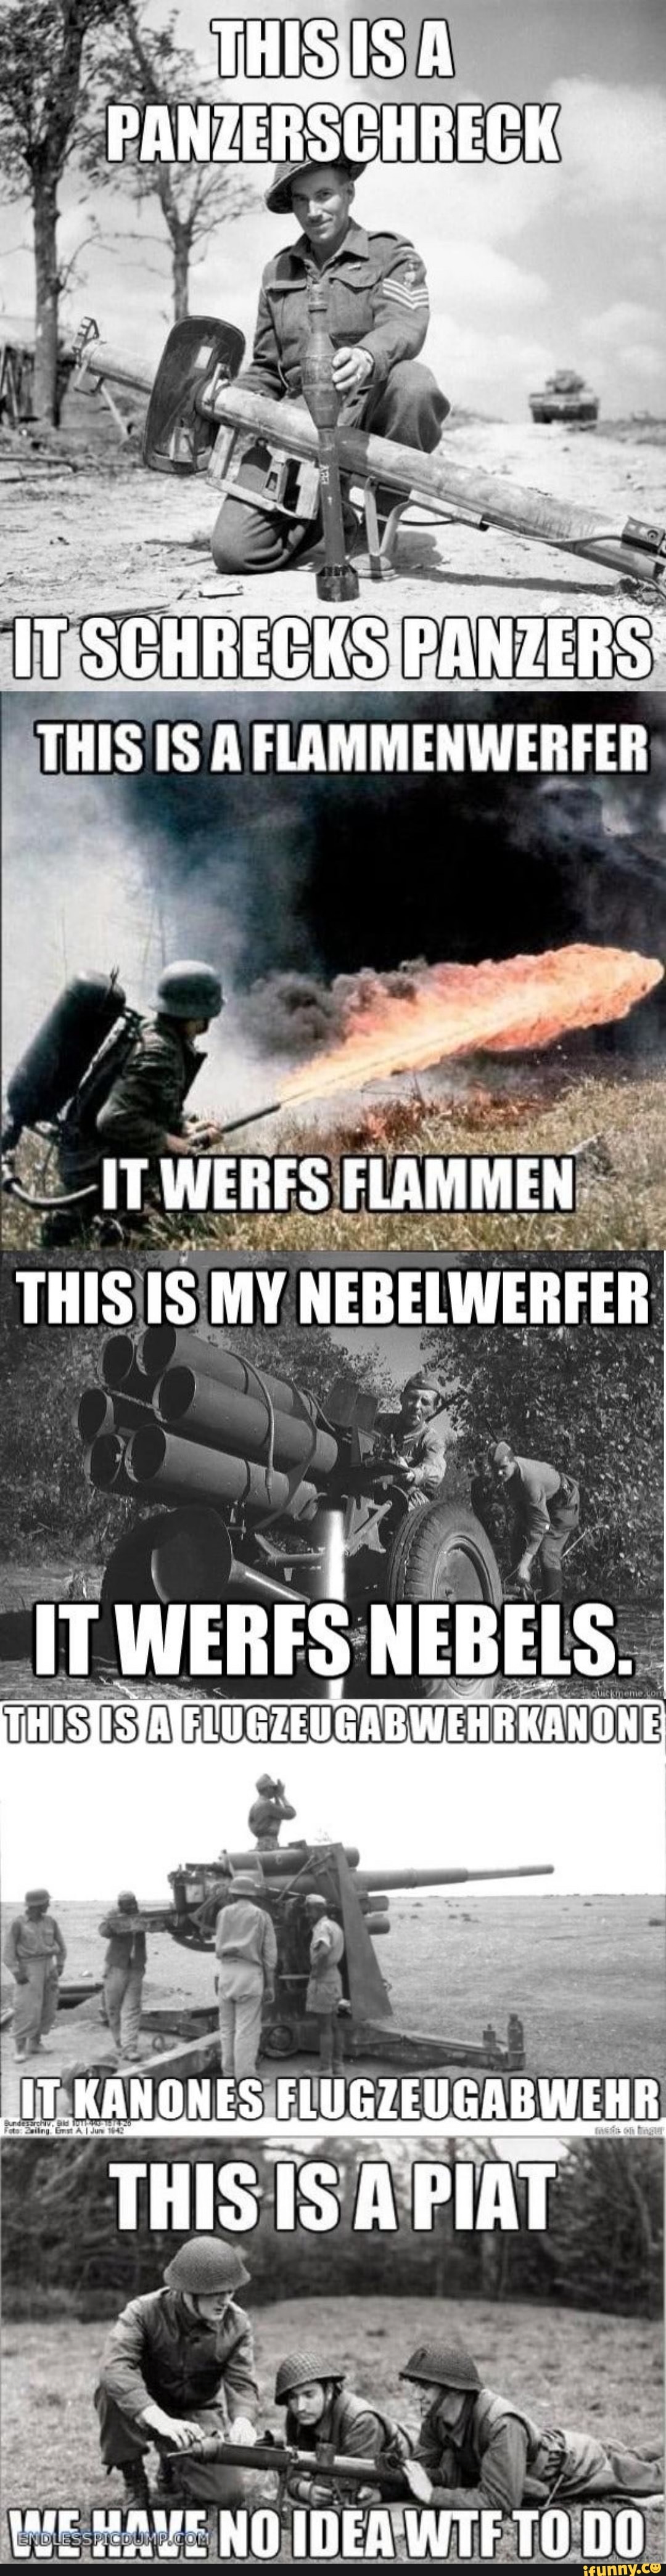 this is a flammenwerfer it werfs flammen